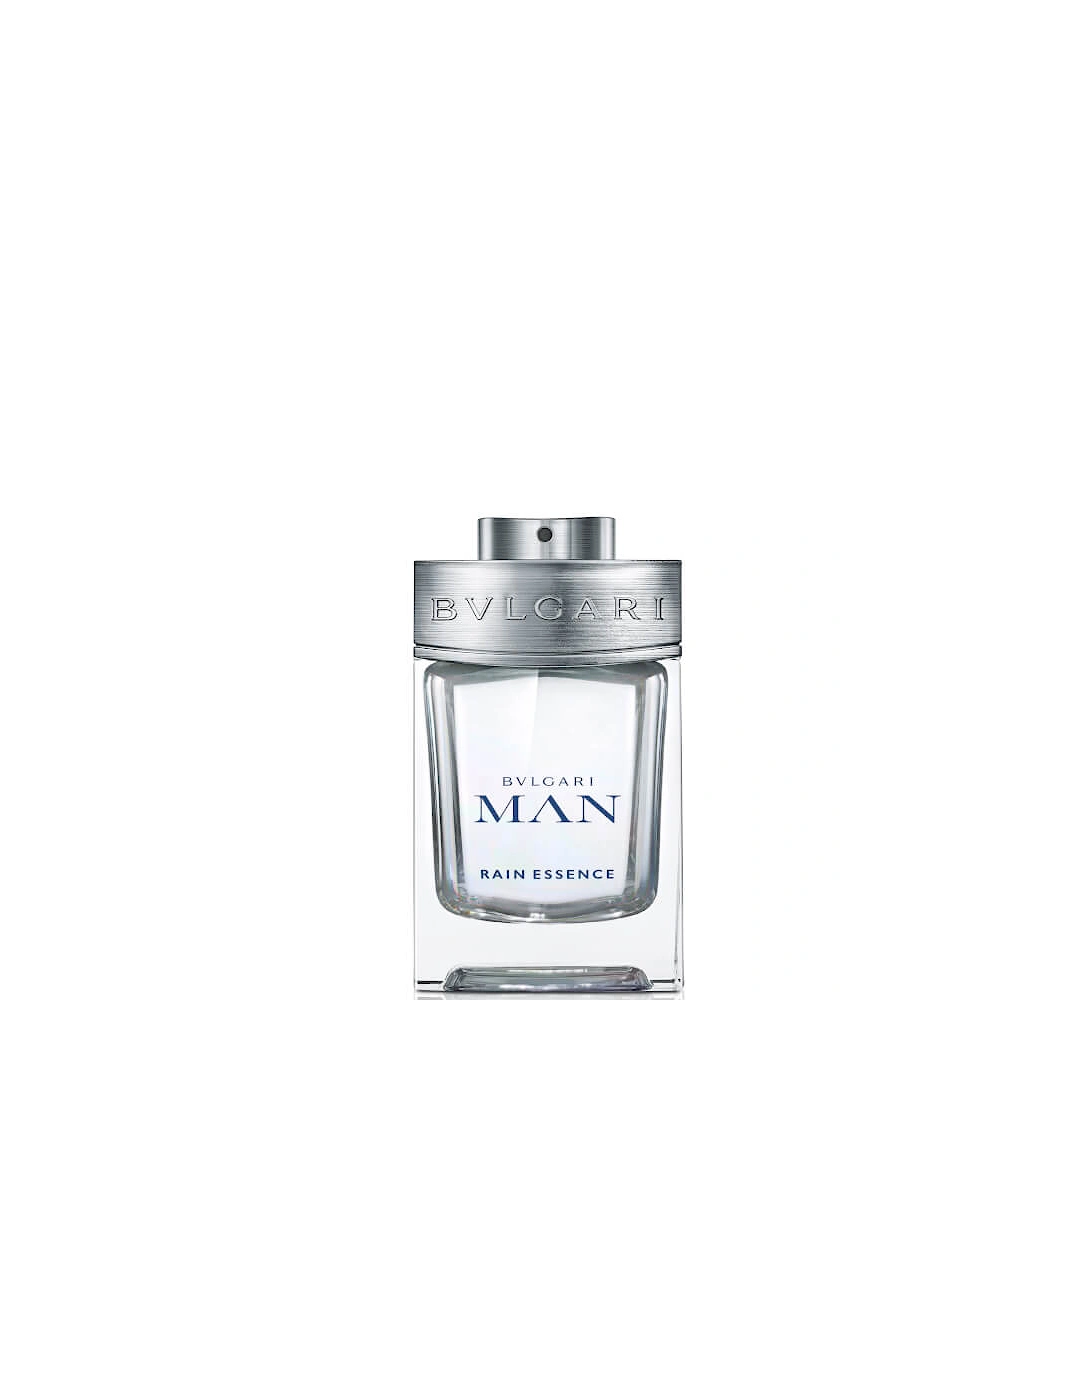 Man Rain Essence Eau de Parfum 100ml, 2 of 1